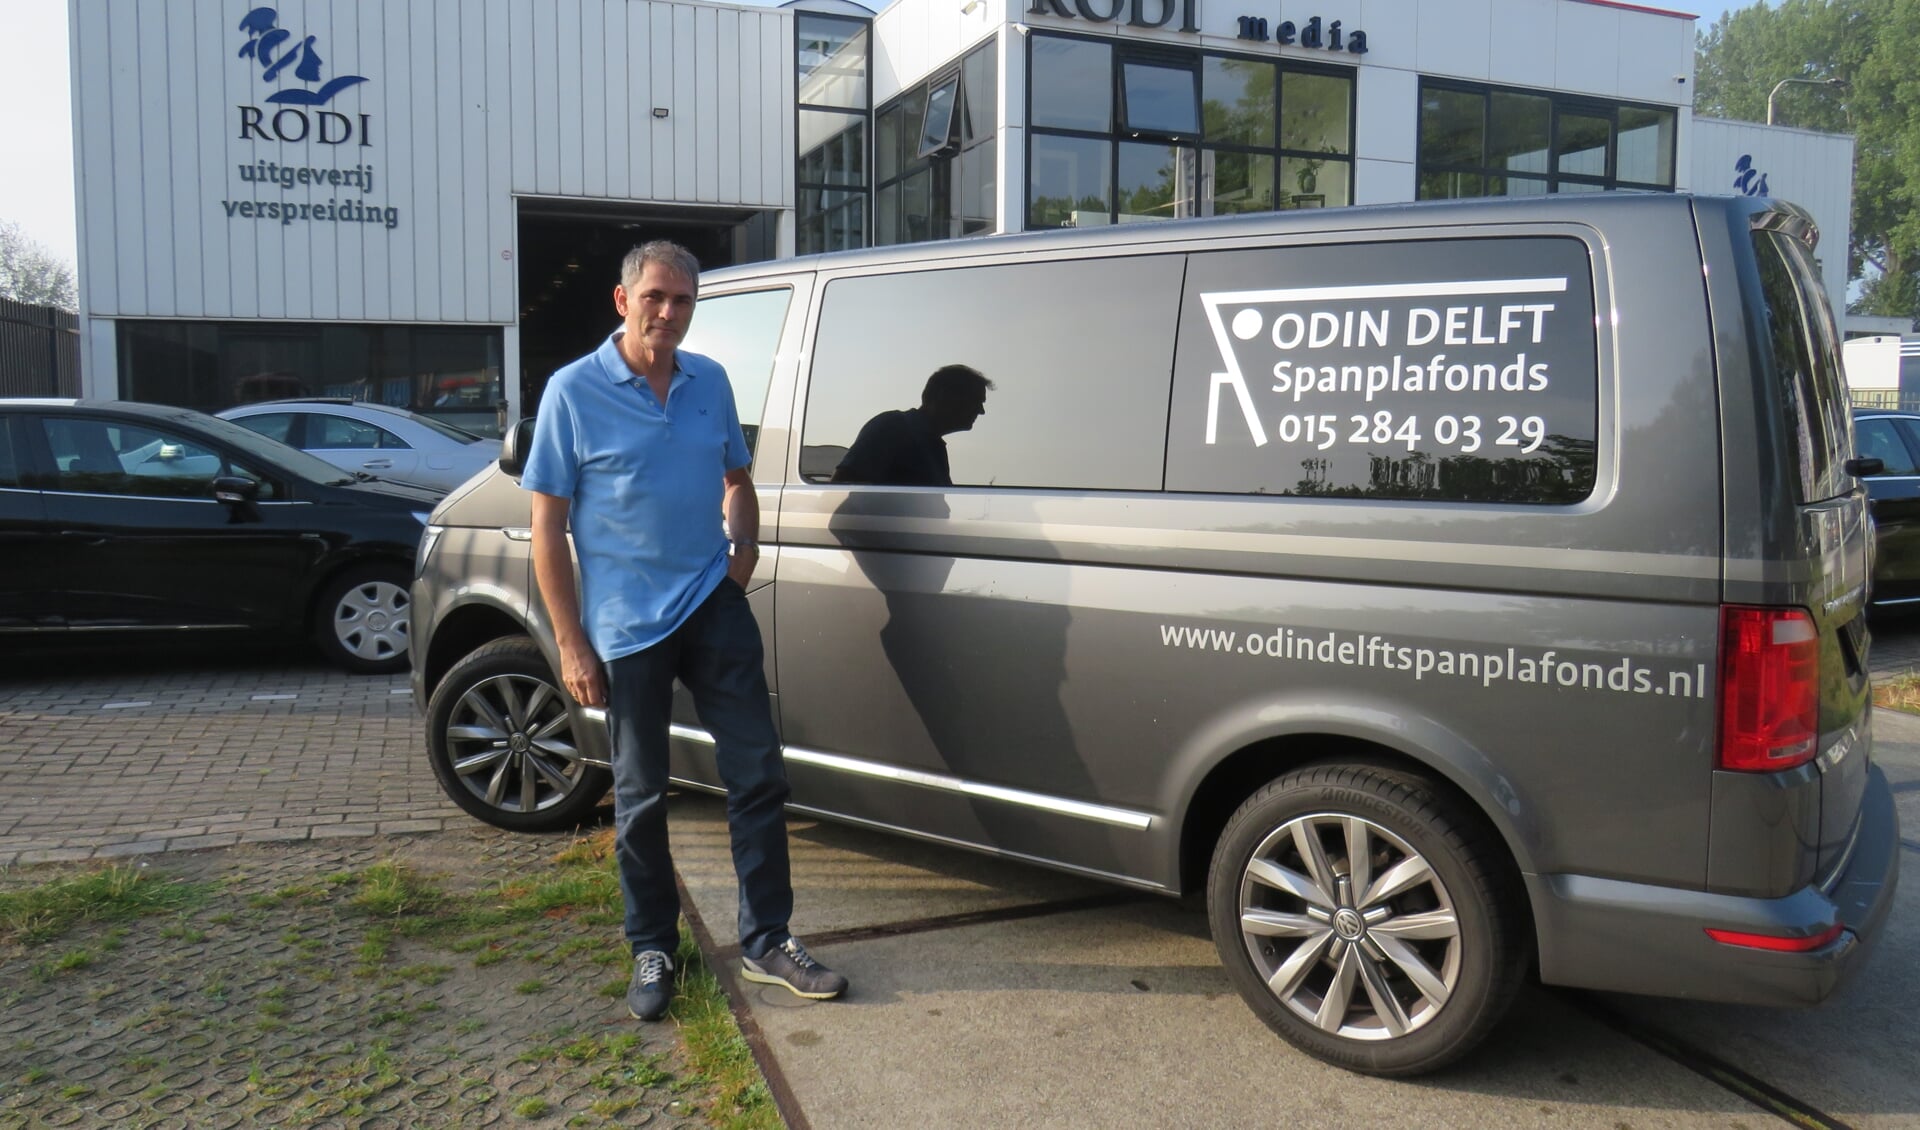 Ferdinand van ODIN Delft Spanplafonds is blij met de nieuwe bestickering